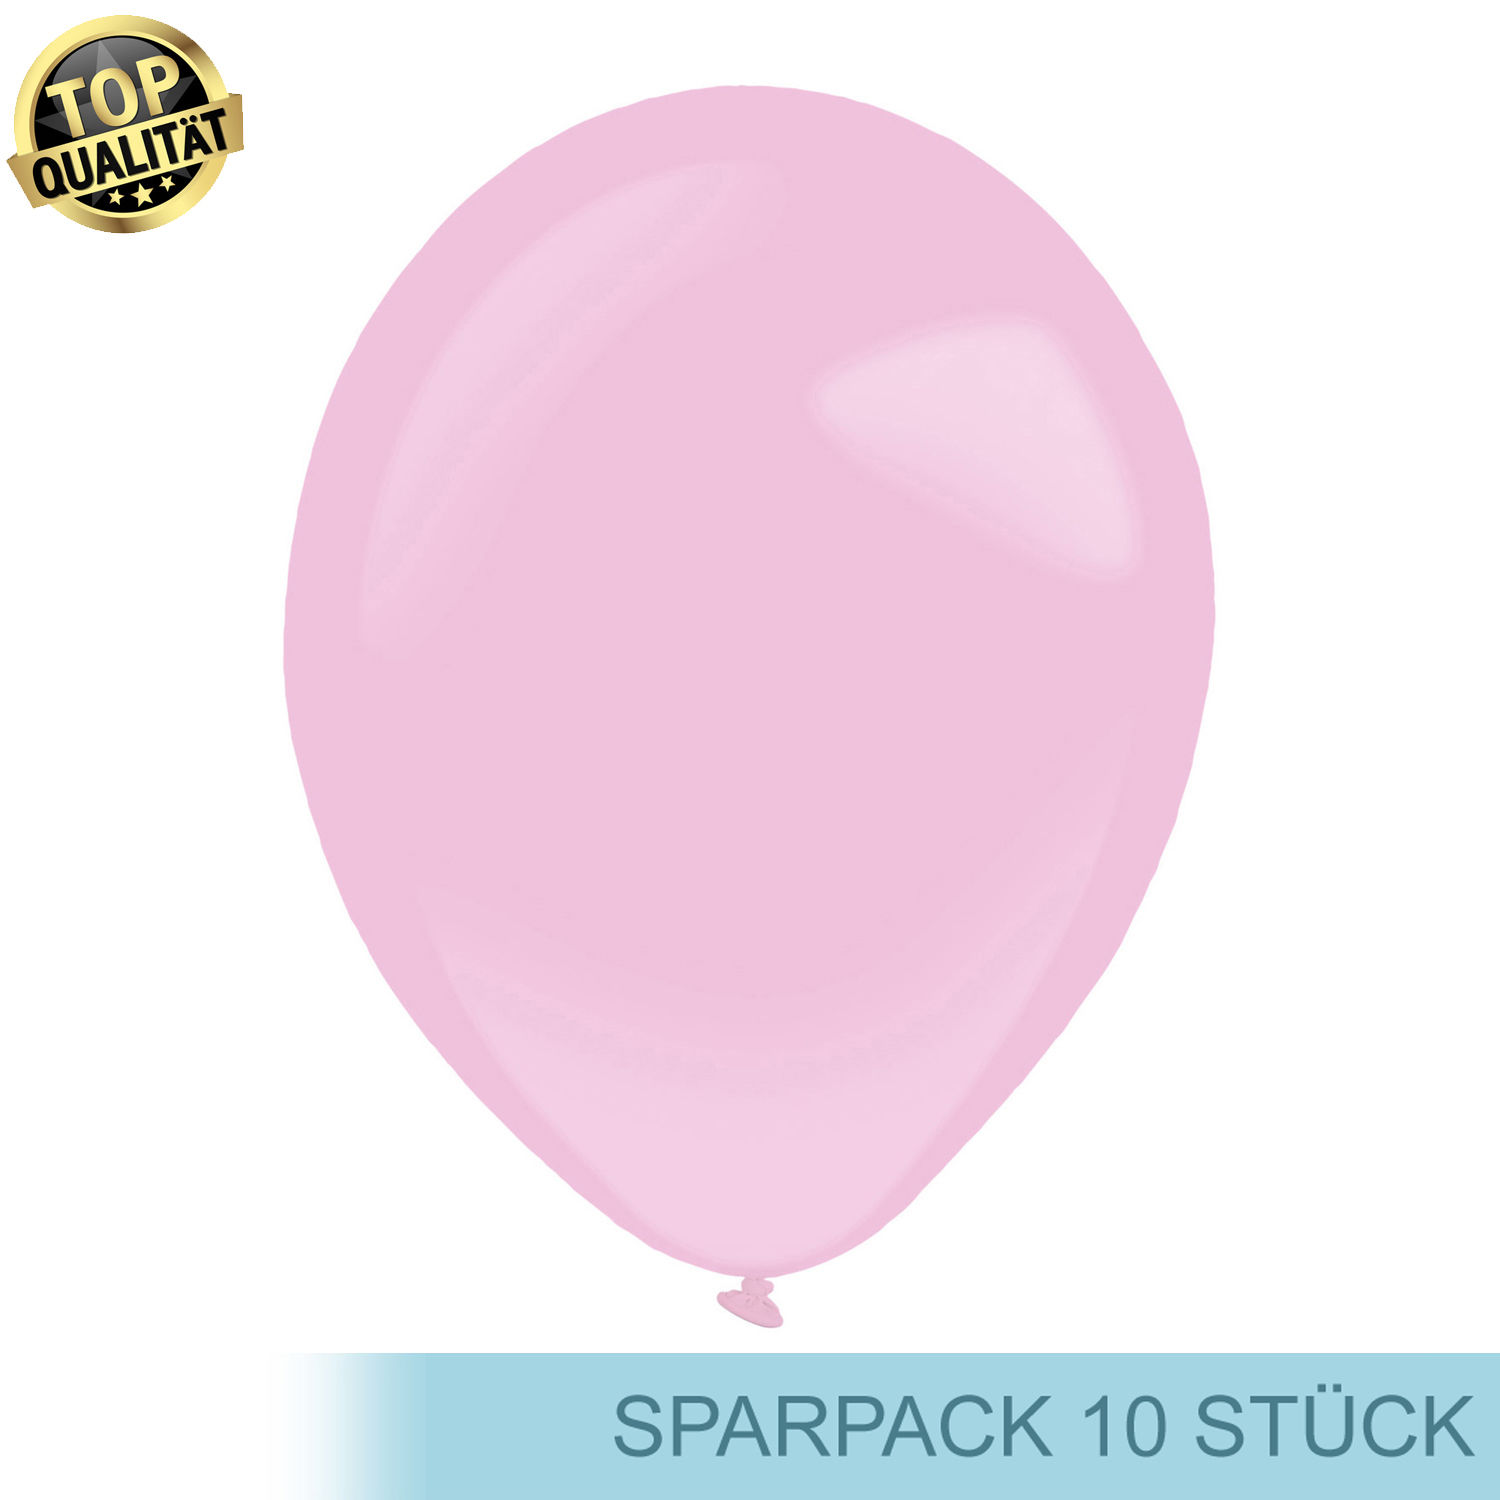 Premium Latex-Luftballon, rund, 10 Stück, ca. 27cm Durchmesser, Rosa / Pretty Pink - Ideal für viele Dekorationen - für Luft